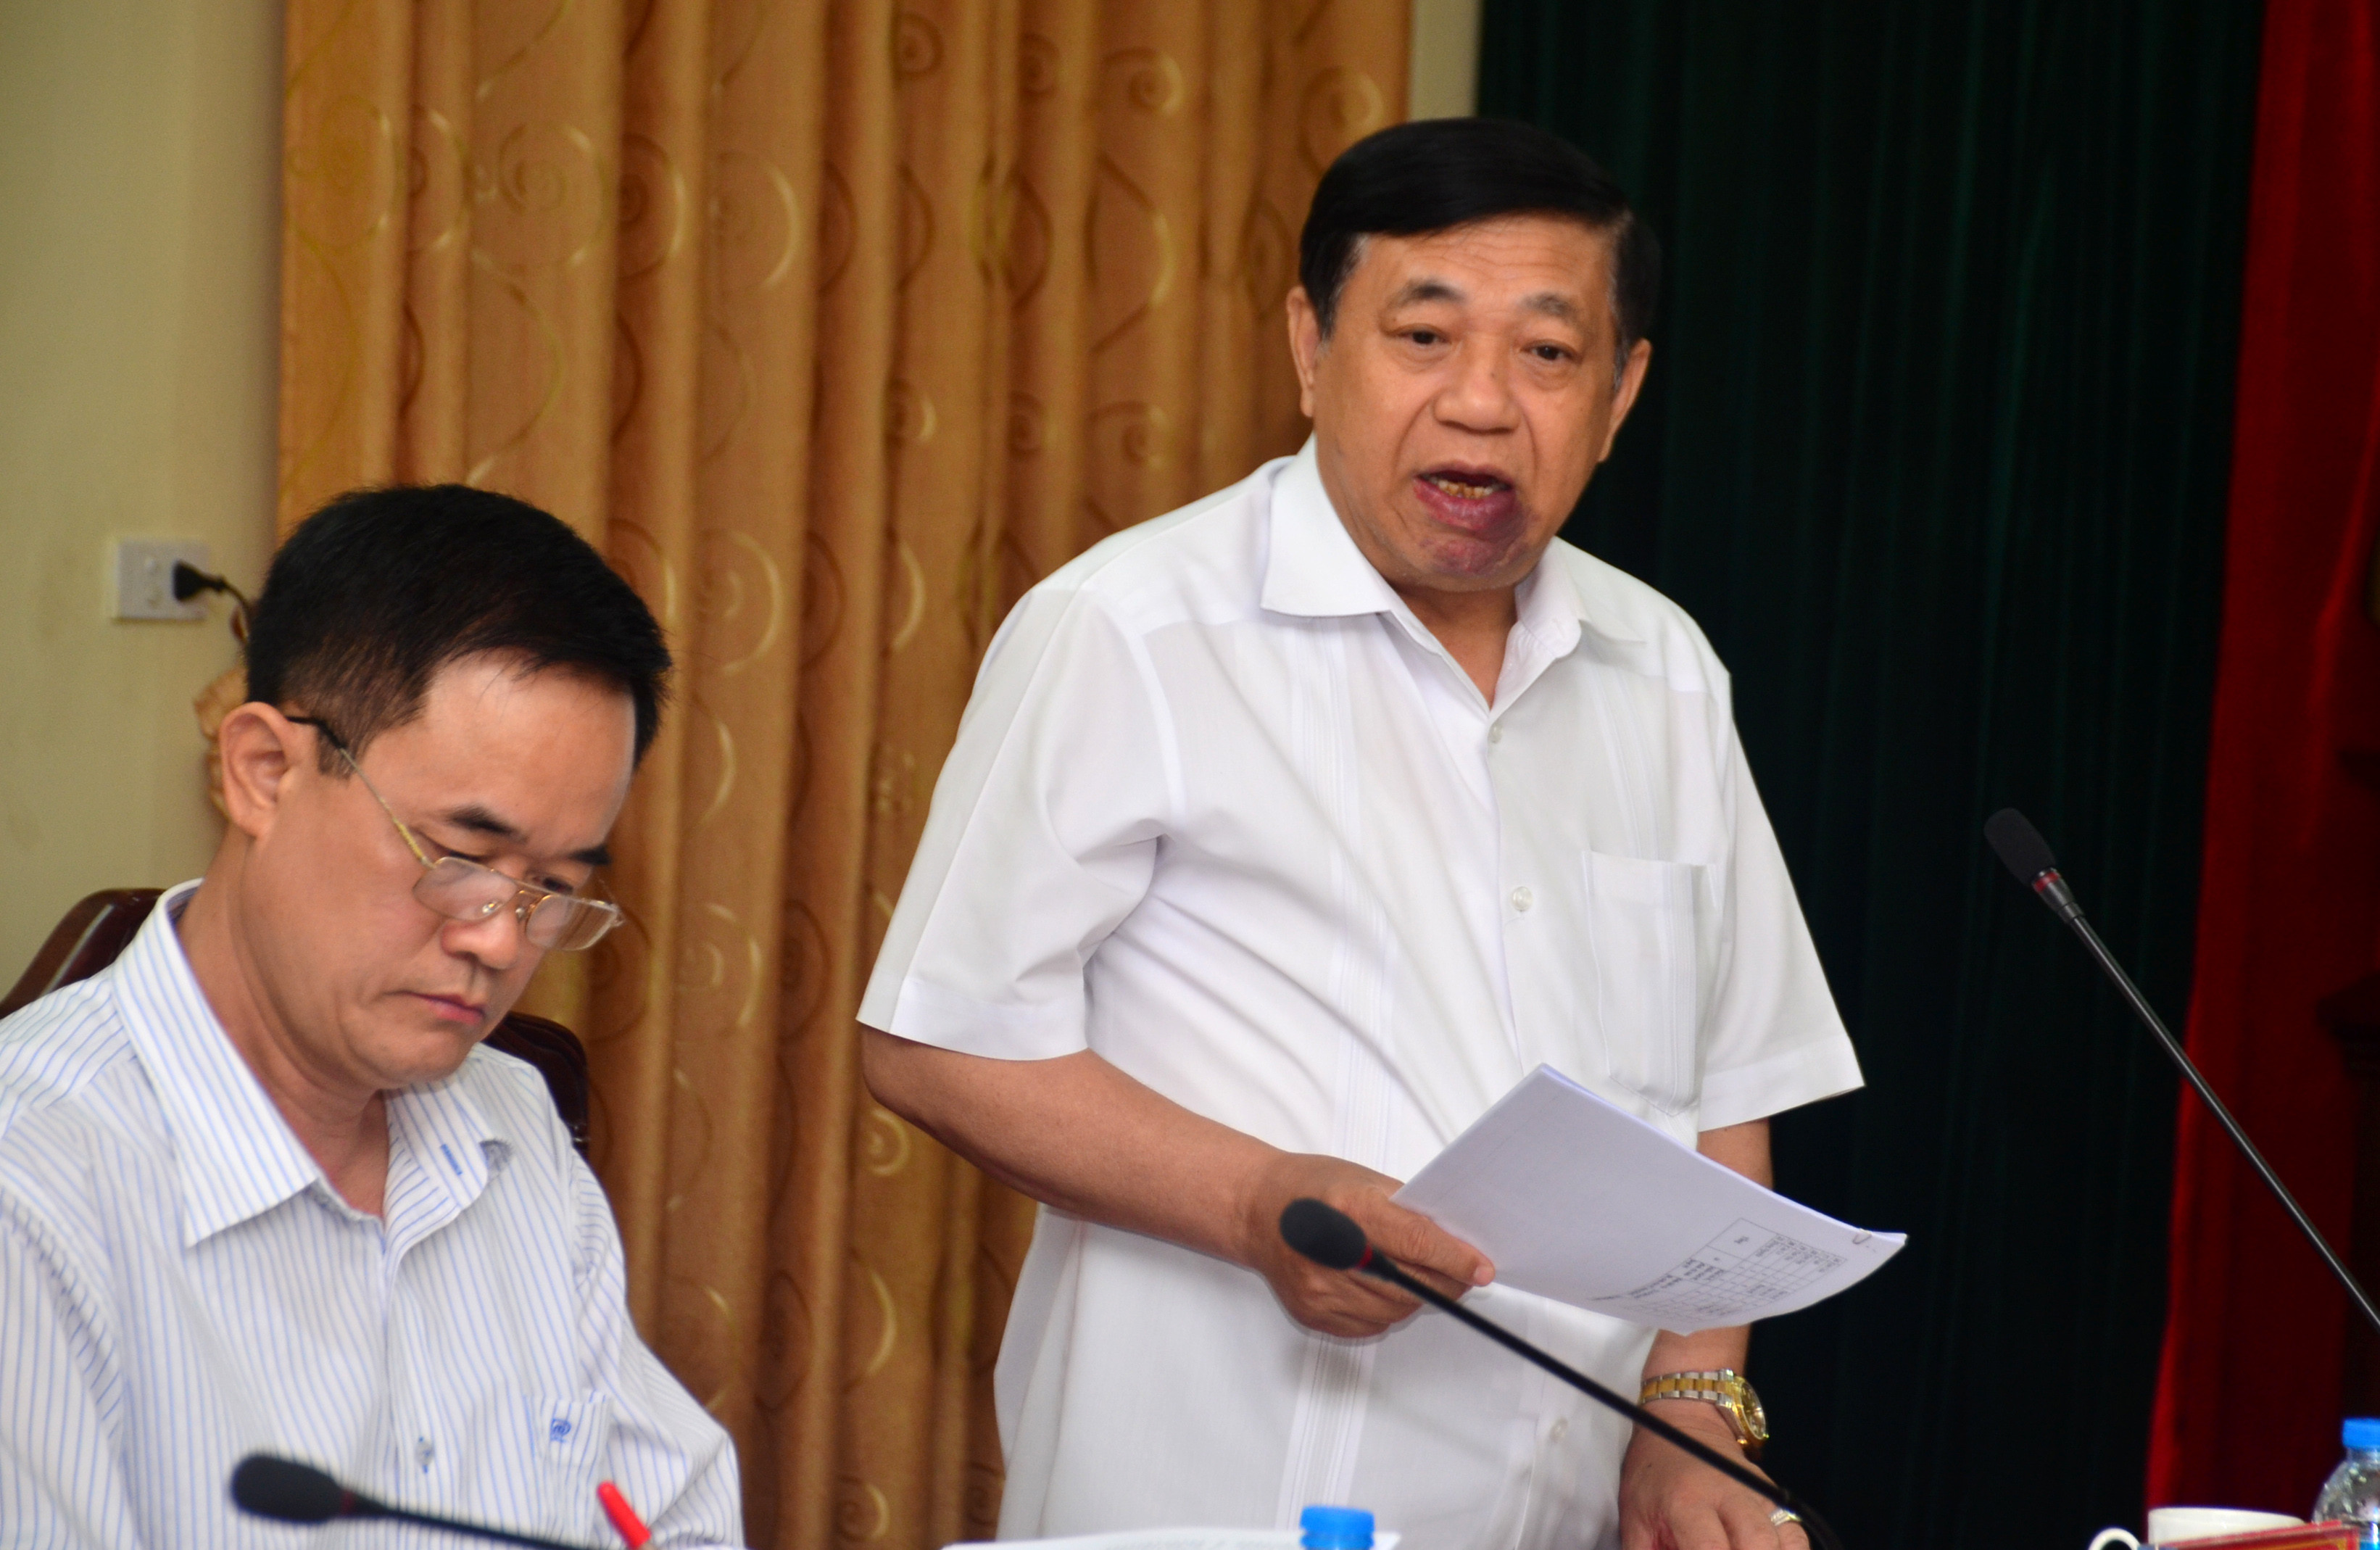 Chủ tịch UBND tỉnh Nguyễn Xuân Đường phát biểu tại cuộc làm việc. Ảnh: Thành Duy